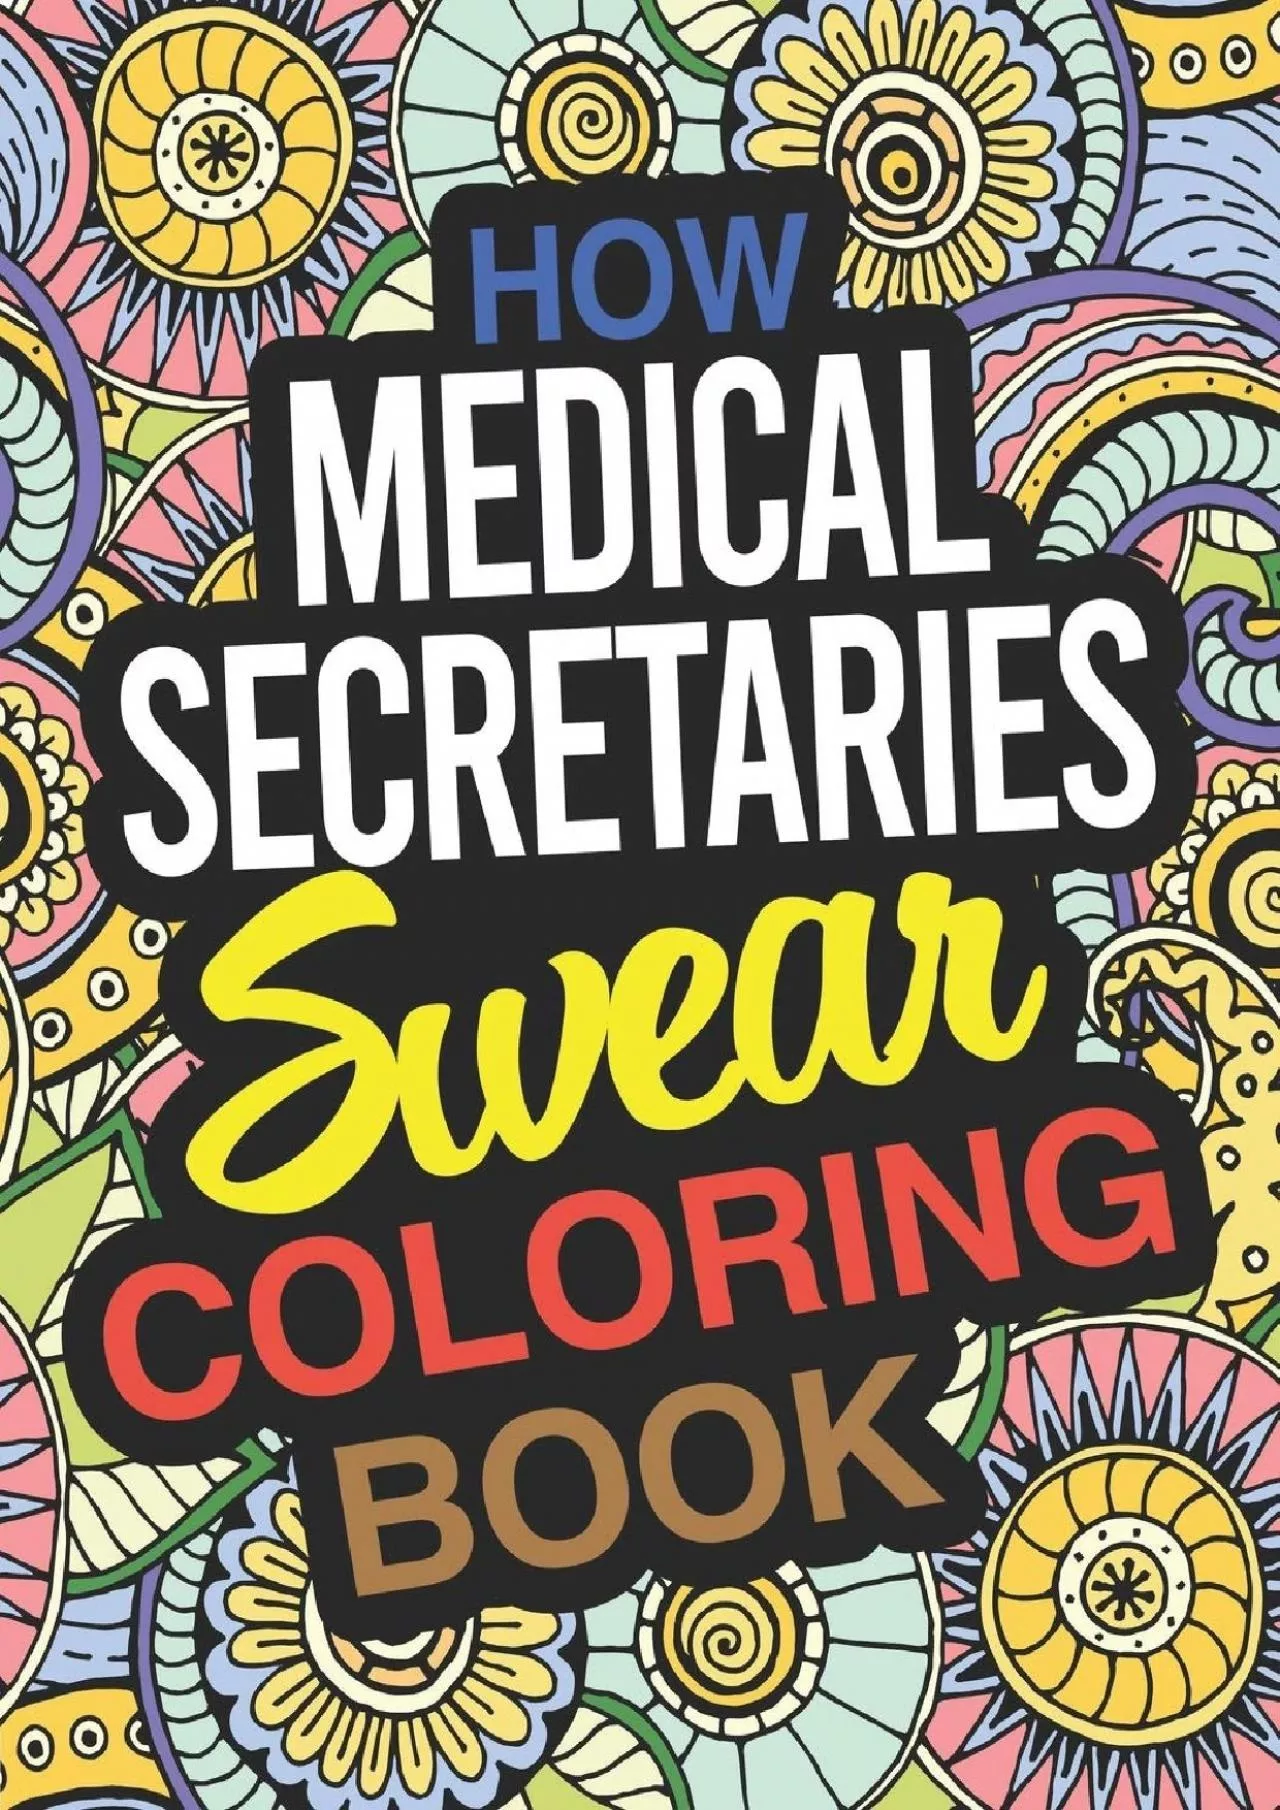 (DOWNLOAD)-How Medical Secretaries Swear Coloring Book: A Medical Secretary Coloring Book